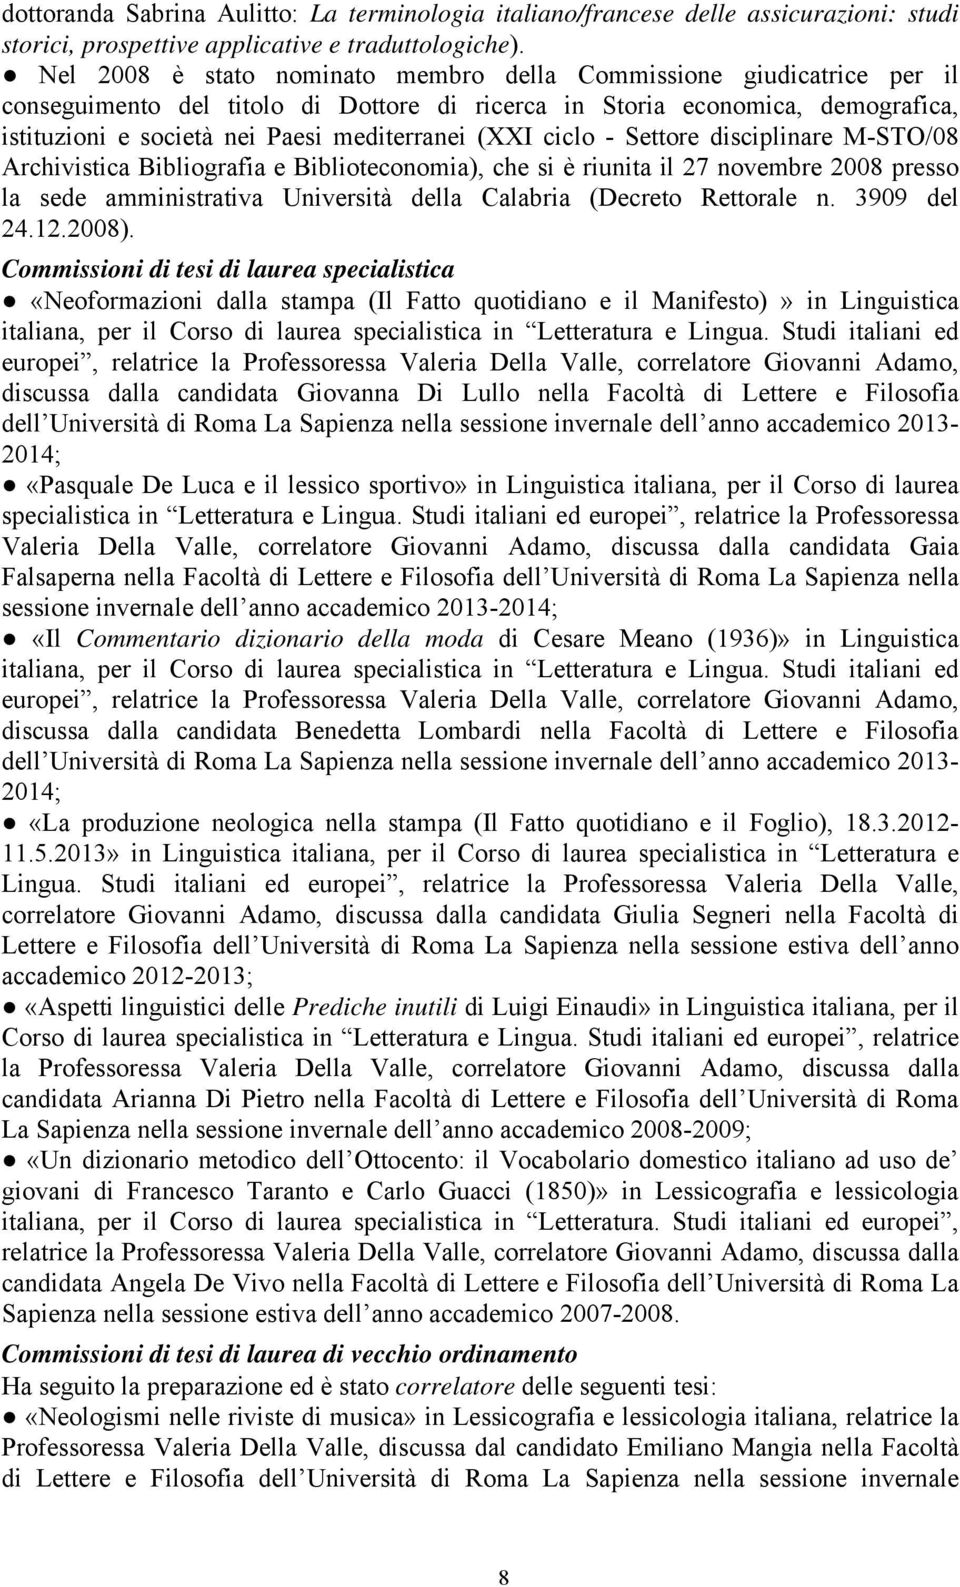 (XXI ciclo - Settore disciplinare M-STO/08 Archivistica Bibliografia e Biblioteconomia), che si è riunita il 27 novembre 2008 presso la sede amministrativa Università della Calabria (Decreto